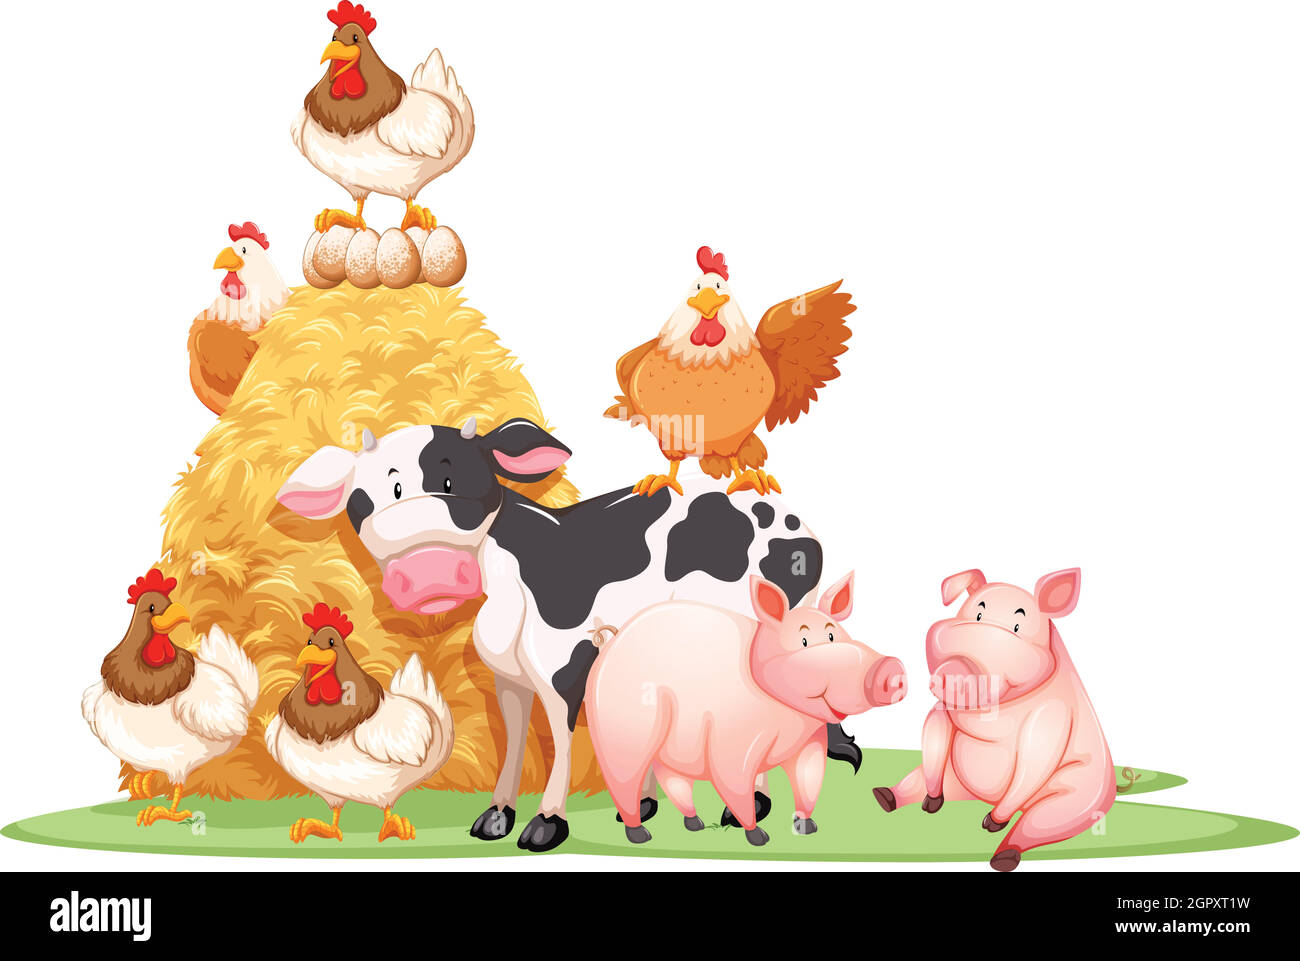 Farm animals with haystack Stock Vector